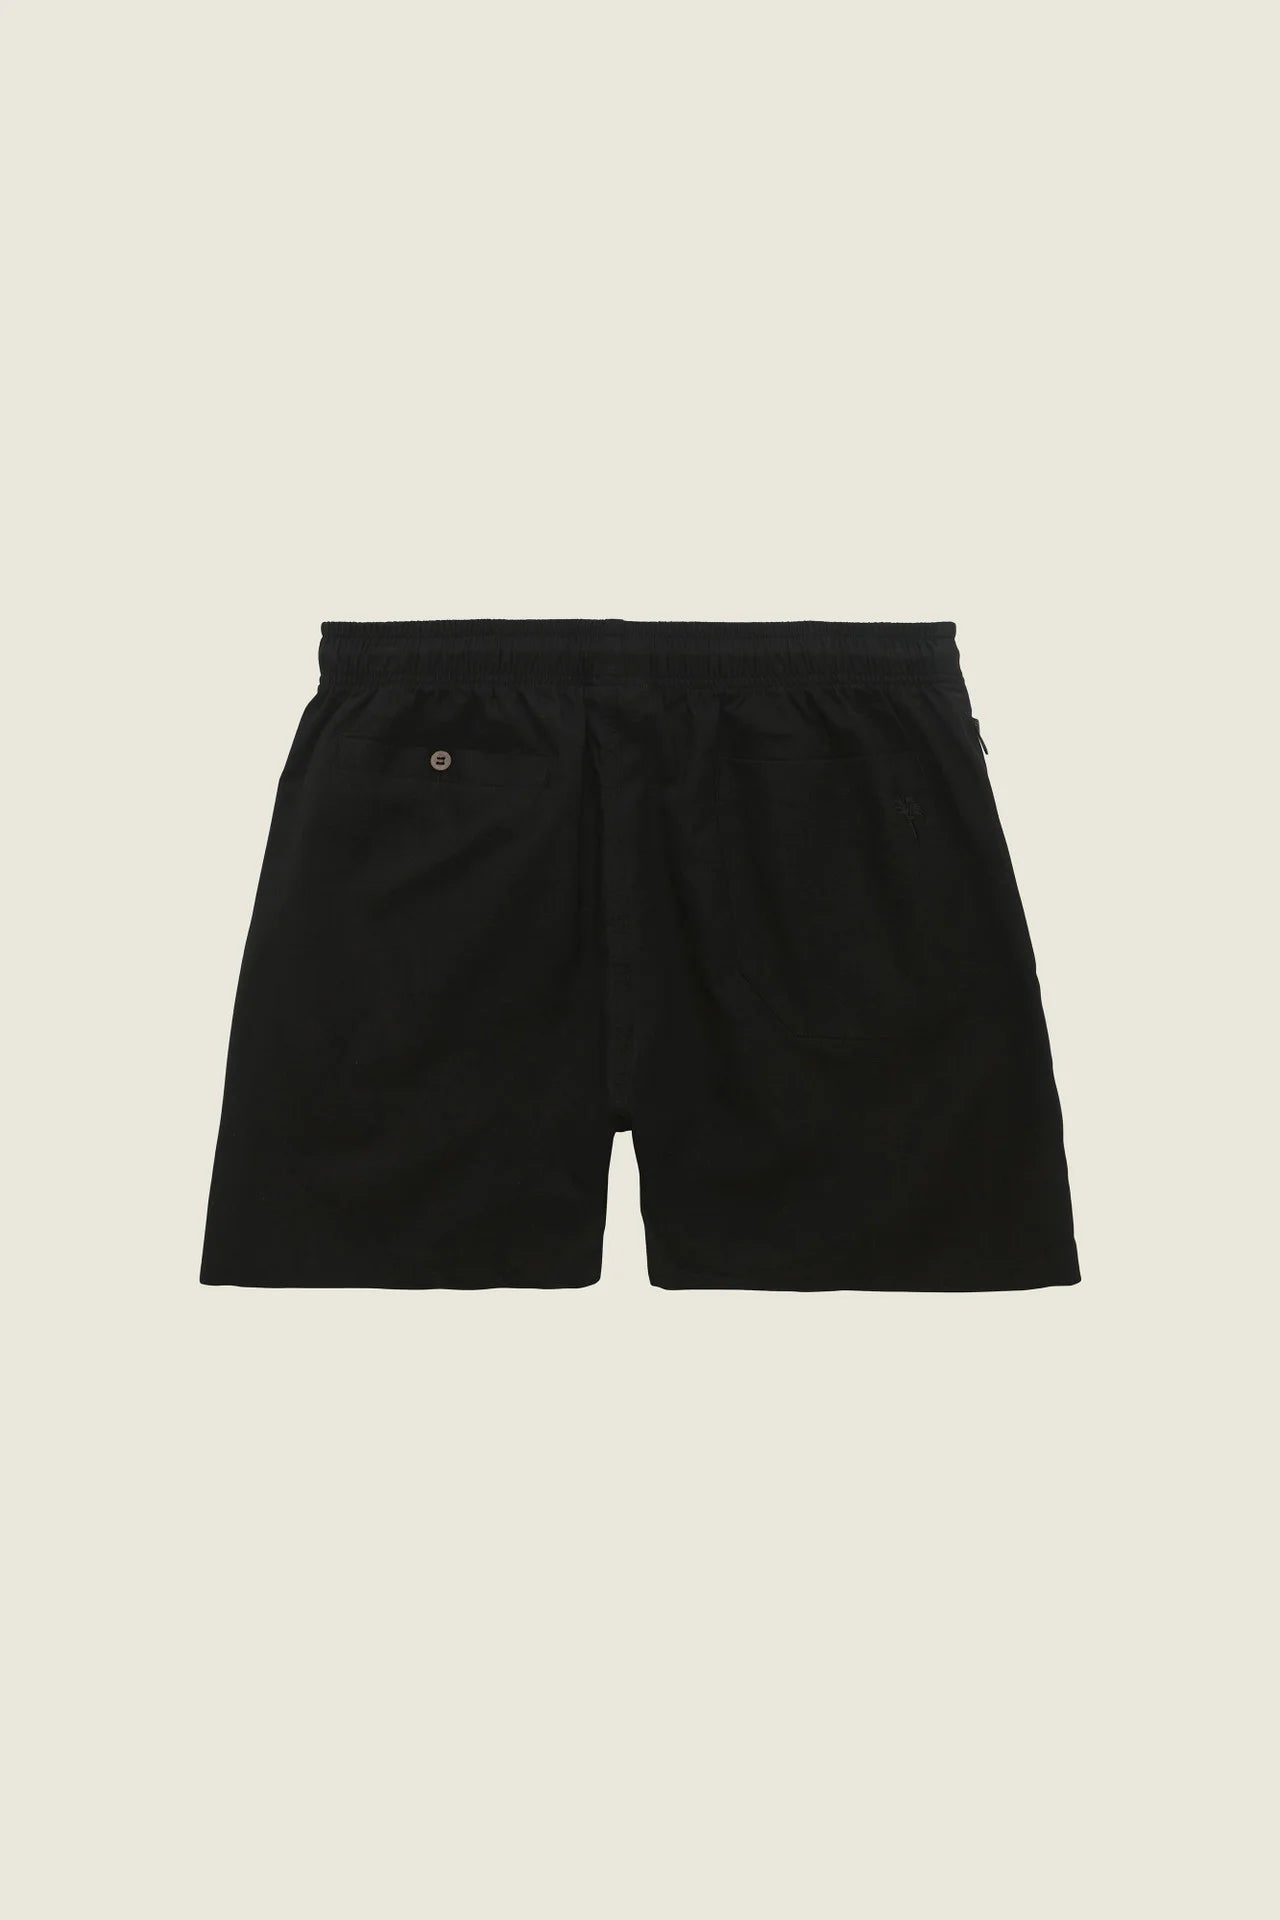 OAS Black Linen Shorts full length back shot